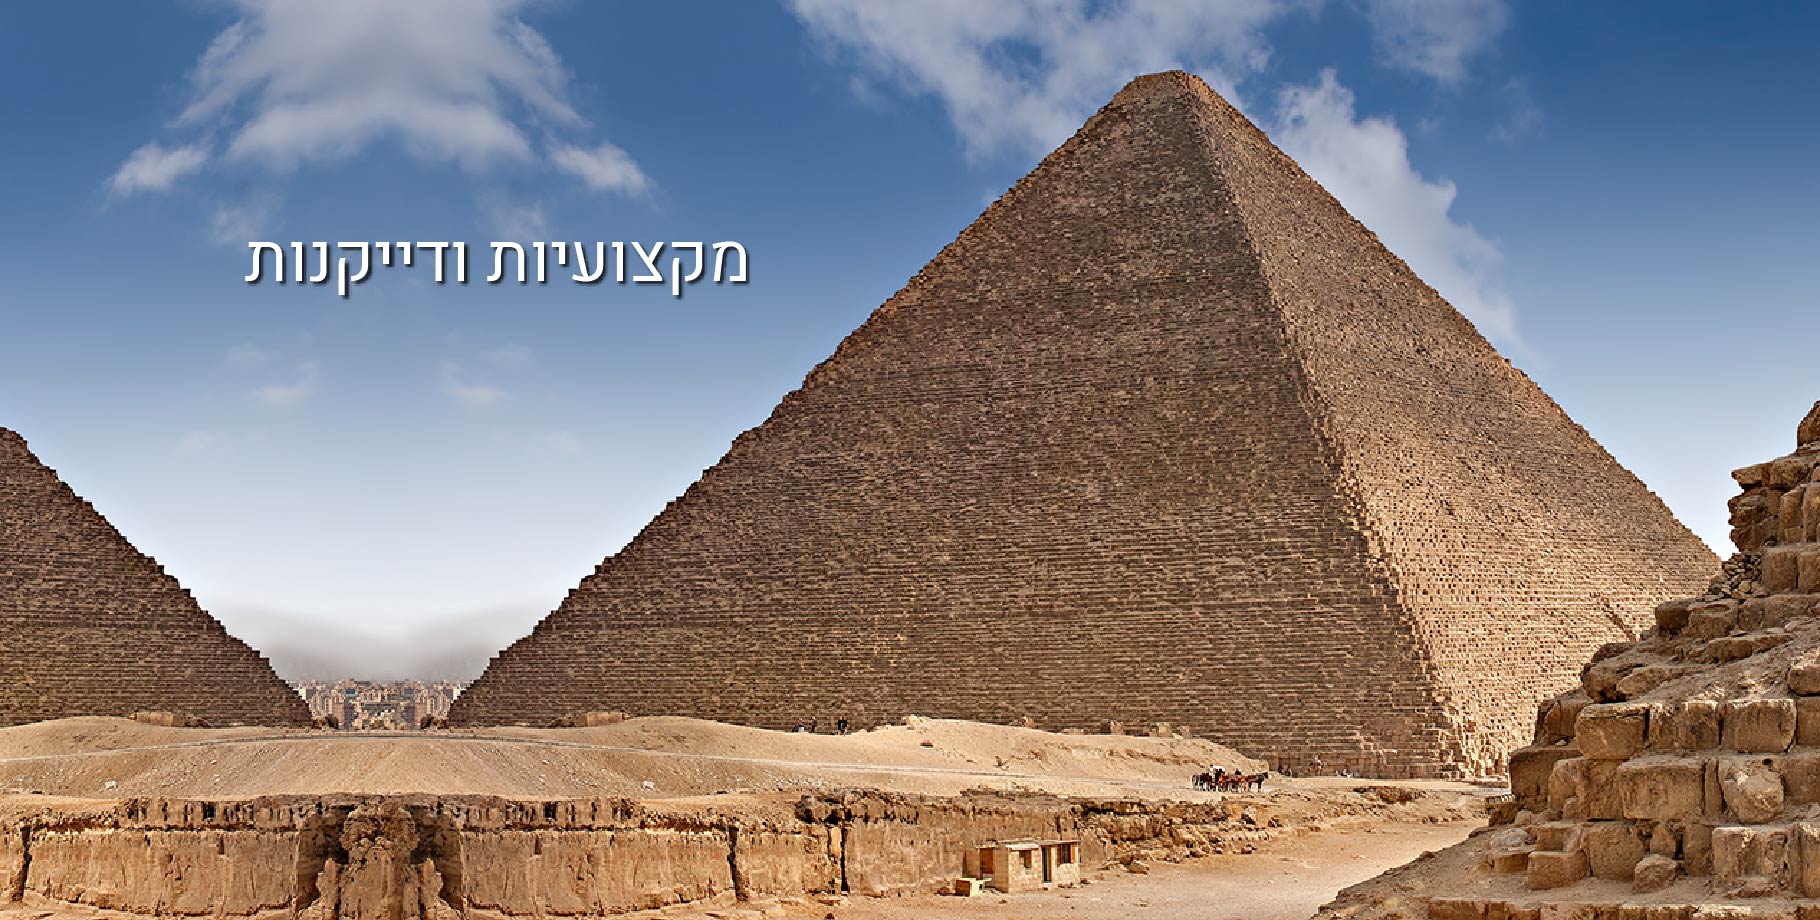 פירמידות במצריים - כיתוב על התמונה מקצועיות ודייקנות